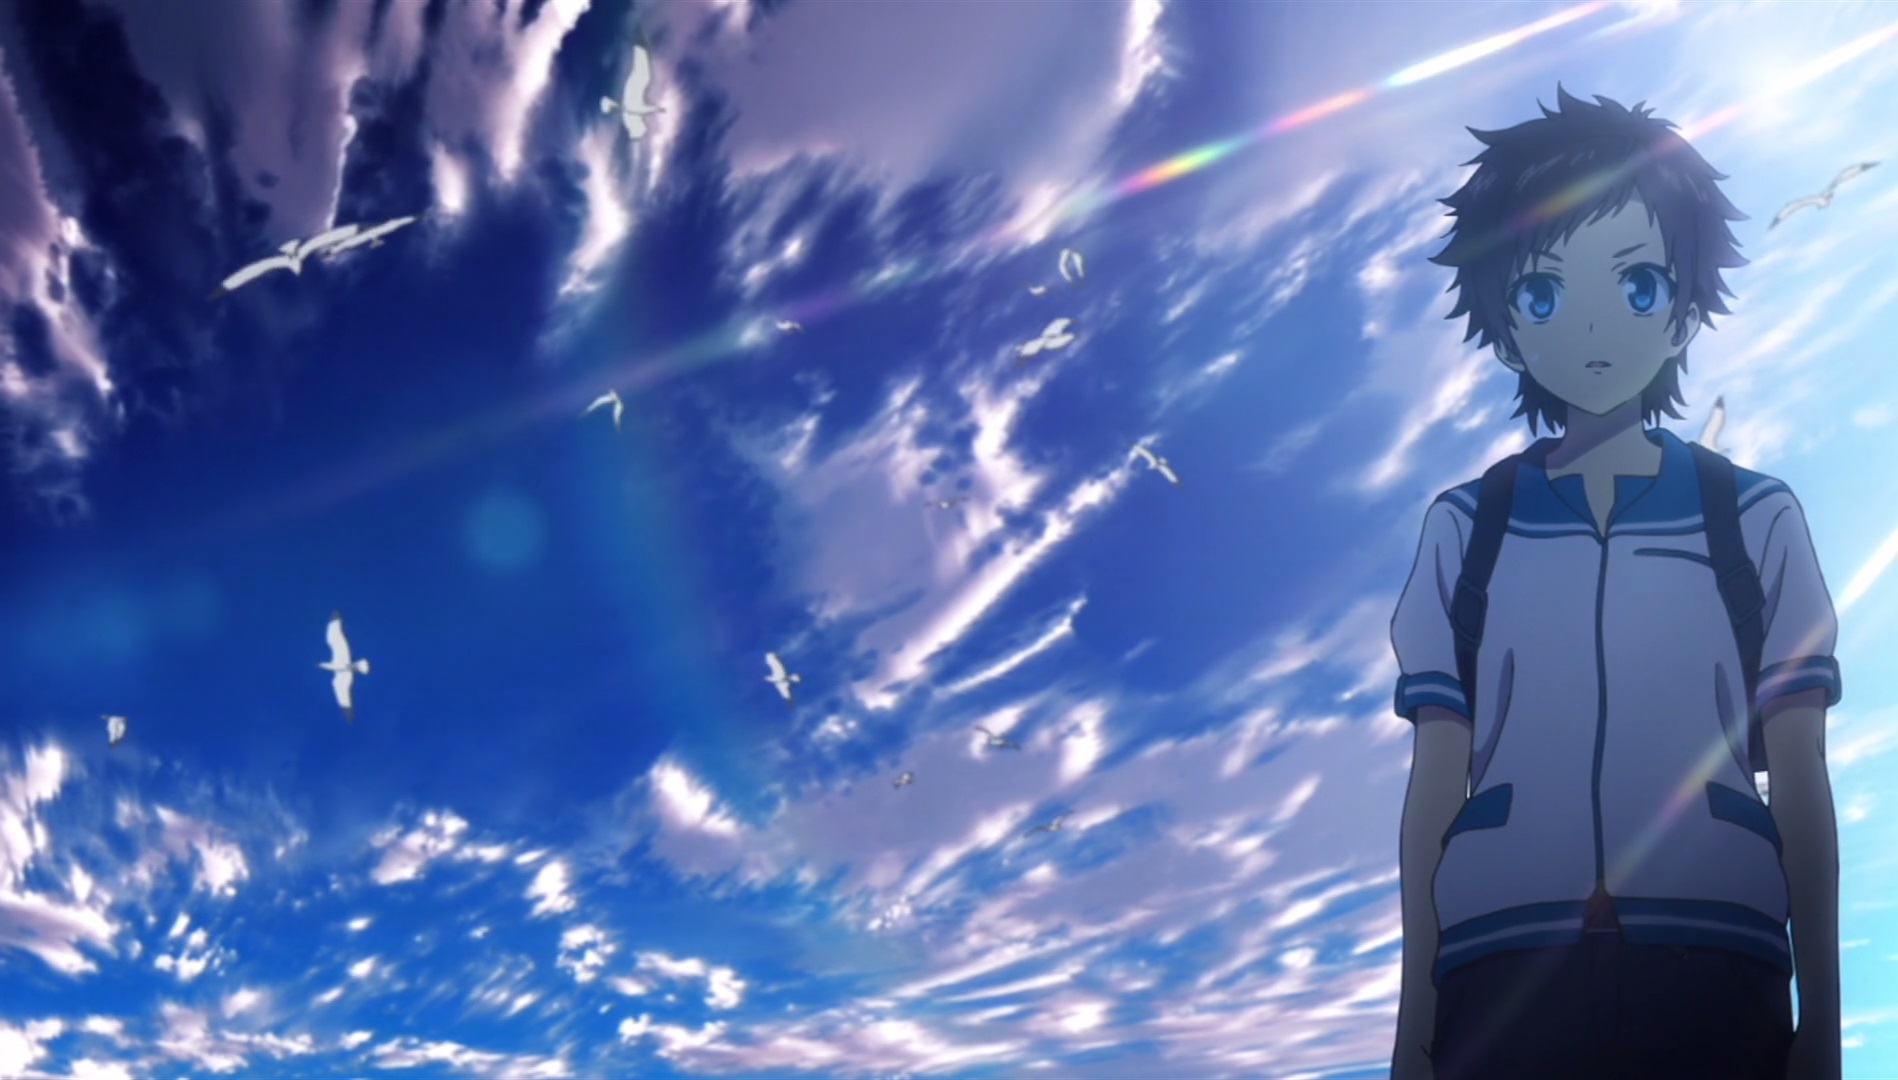 Anime Nagi no Asukara HD Wallpaper | Background Image